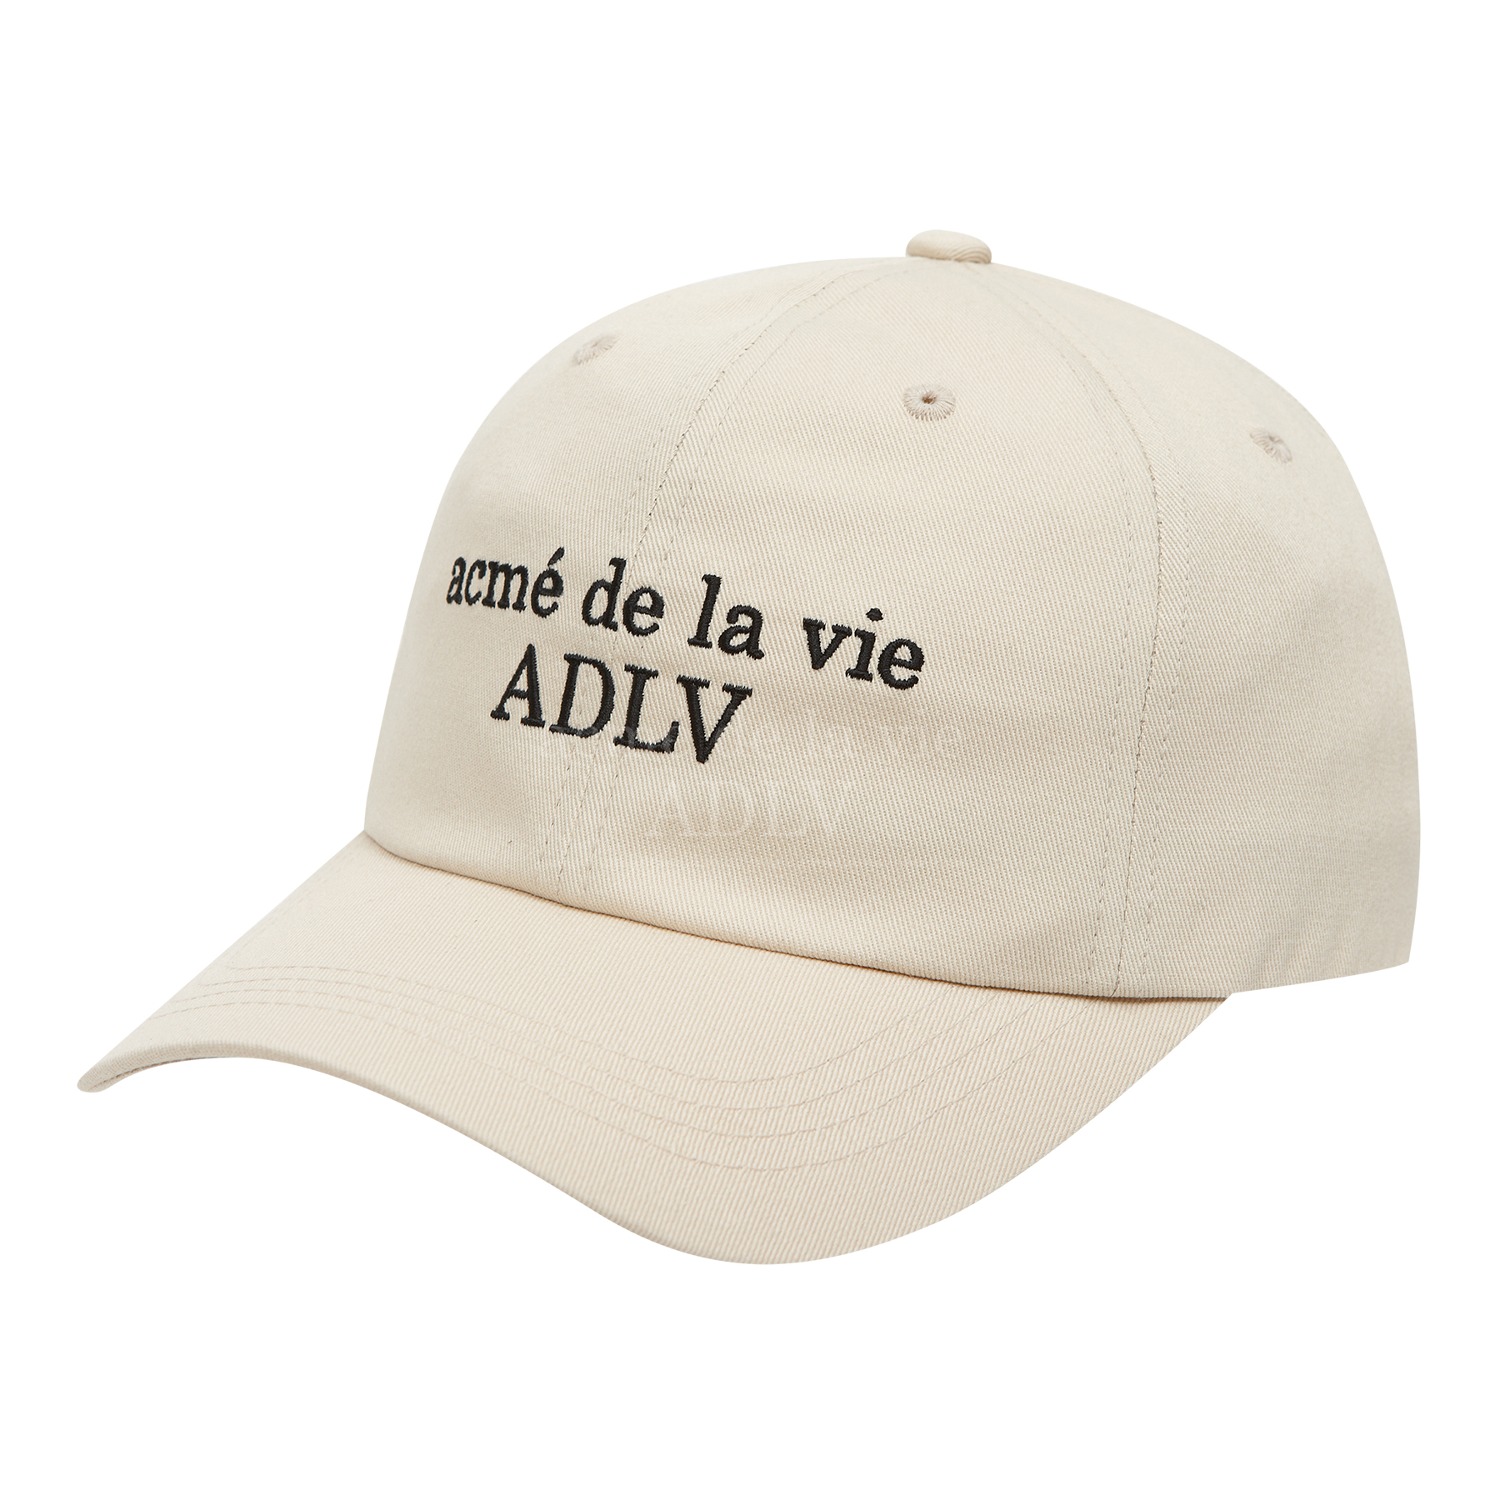 [아크메드라비] ADLV BASIC BALL CAP BEIGE,아크메드라비 acmedelavie,아크메드라비